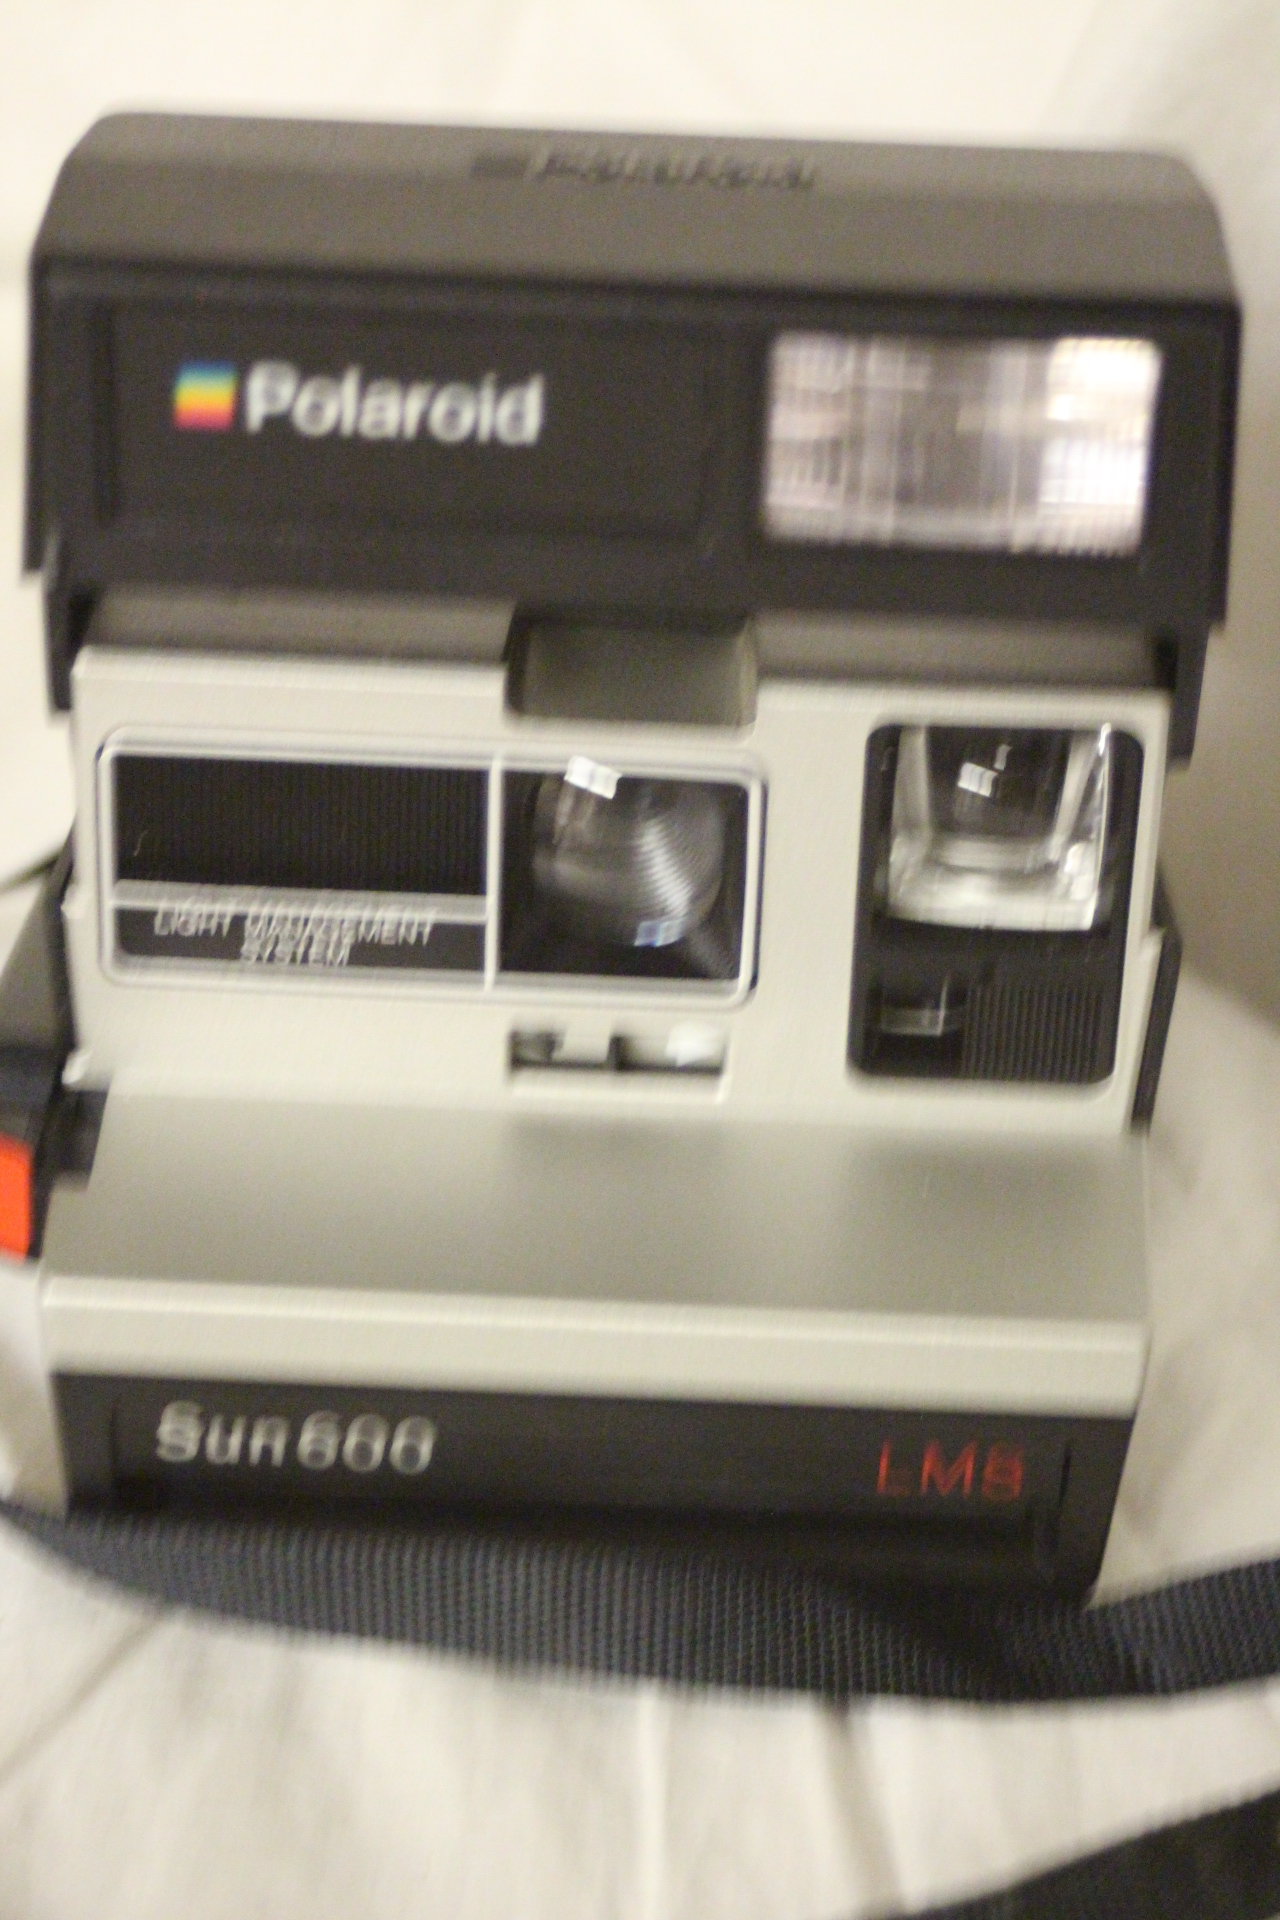 Polaroid Corporation - Wikipedia